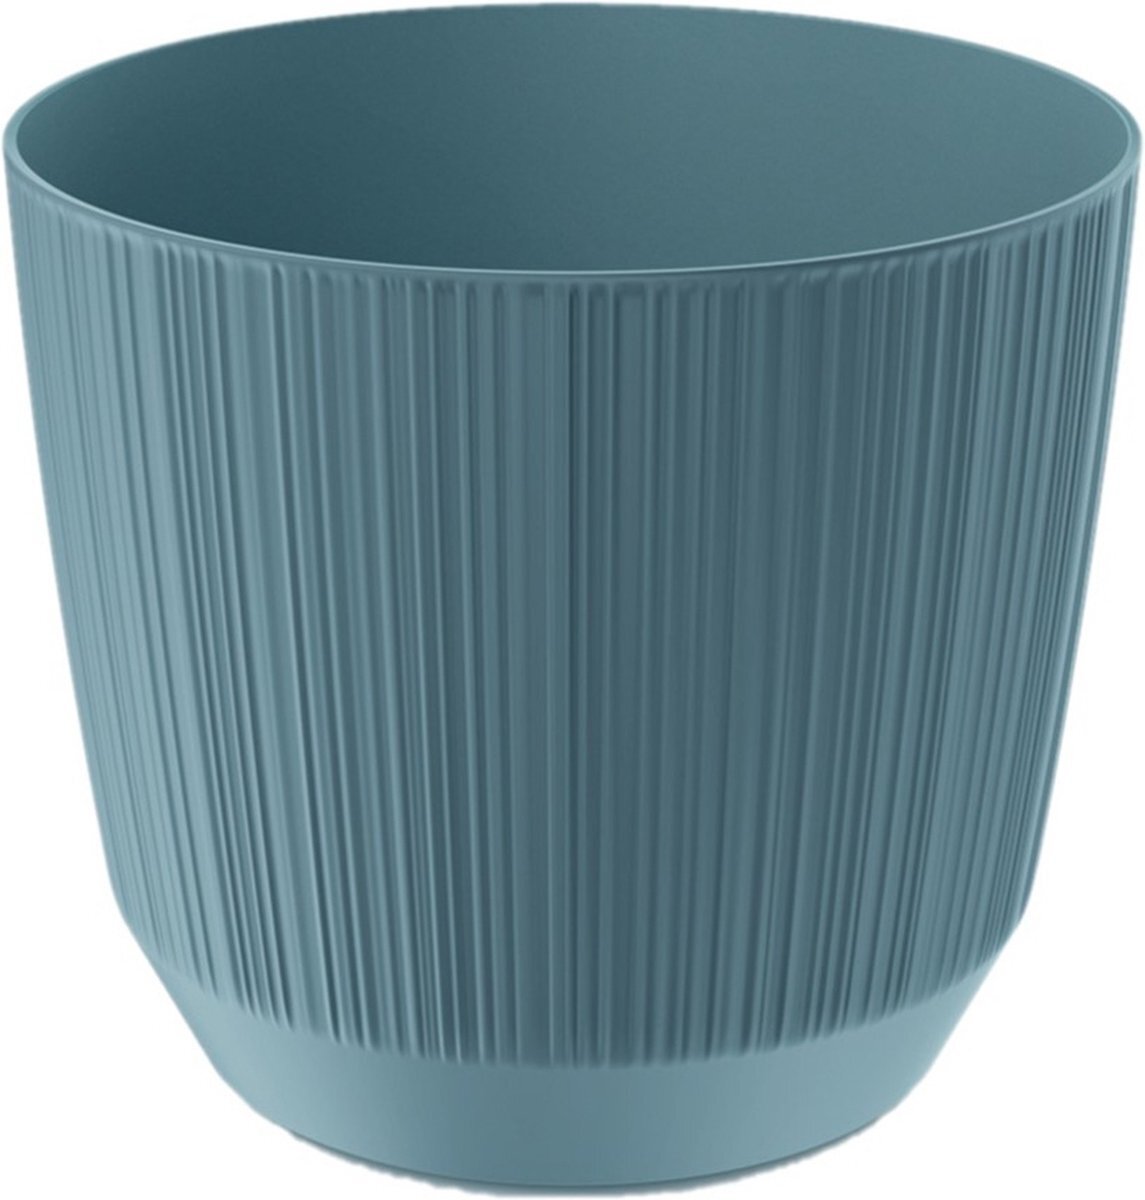 Prosperplast Moderne carf-stripe plantenpot/bloempot kunststof dia 15 cm/hoogte 13 cm stone blauw voor binnen/buiten